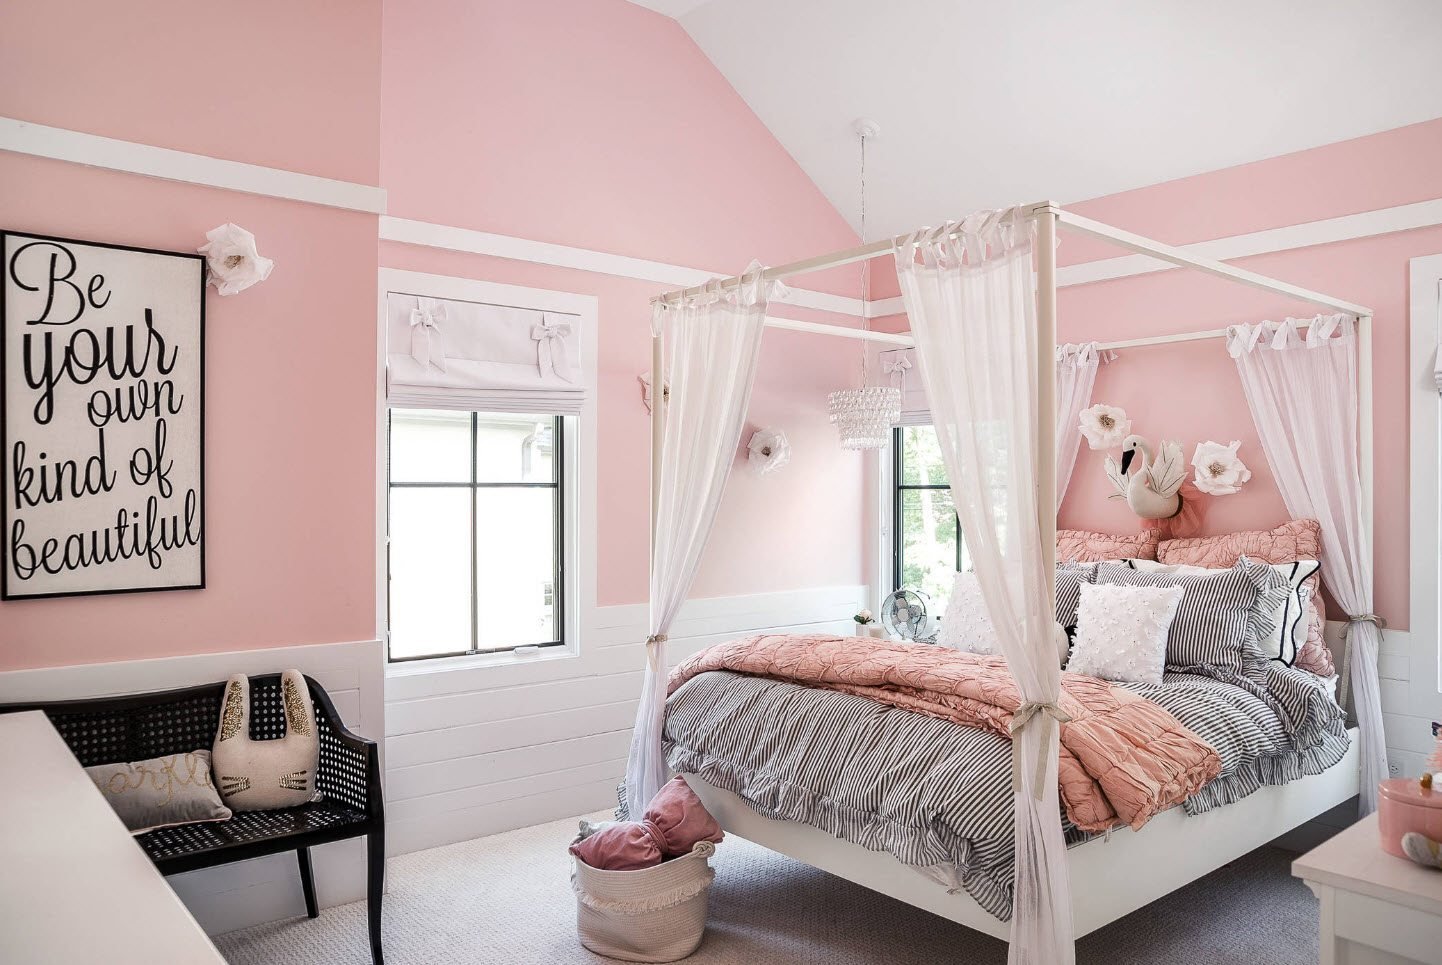 Комната в розовых тонах. Светлая комната для девочки. Спальня в бело розовых тонах. Спальня для девочки в розовых тонах. Розовая комната для девушки.